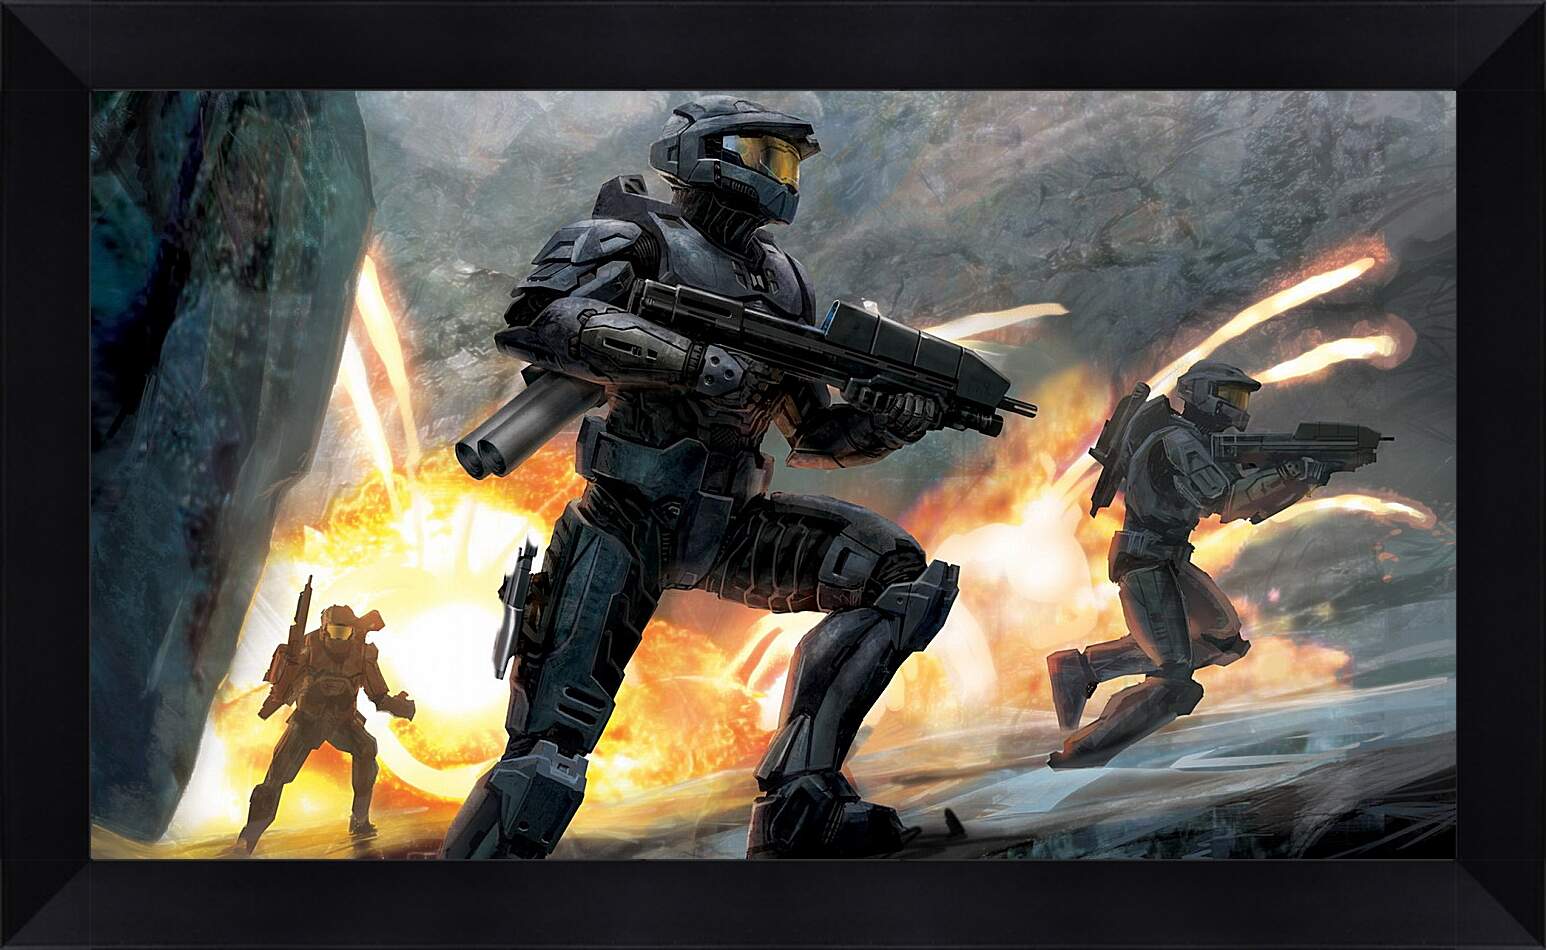 Картина в раме - Halo 3
